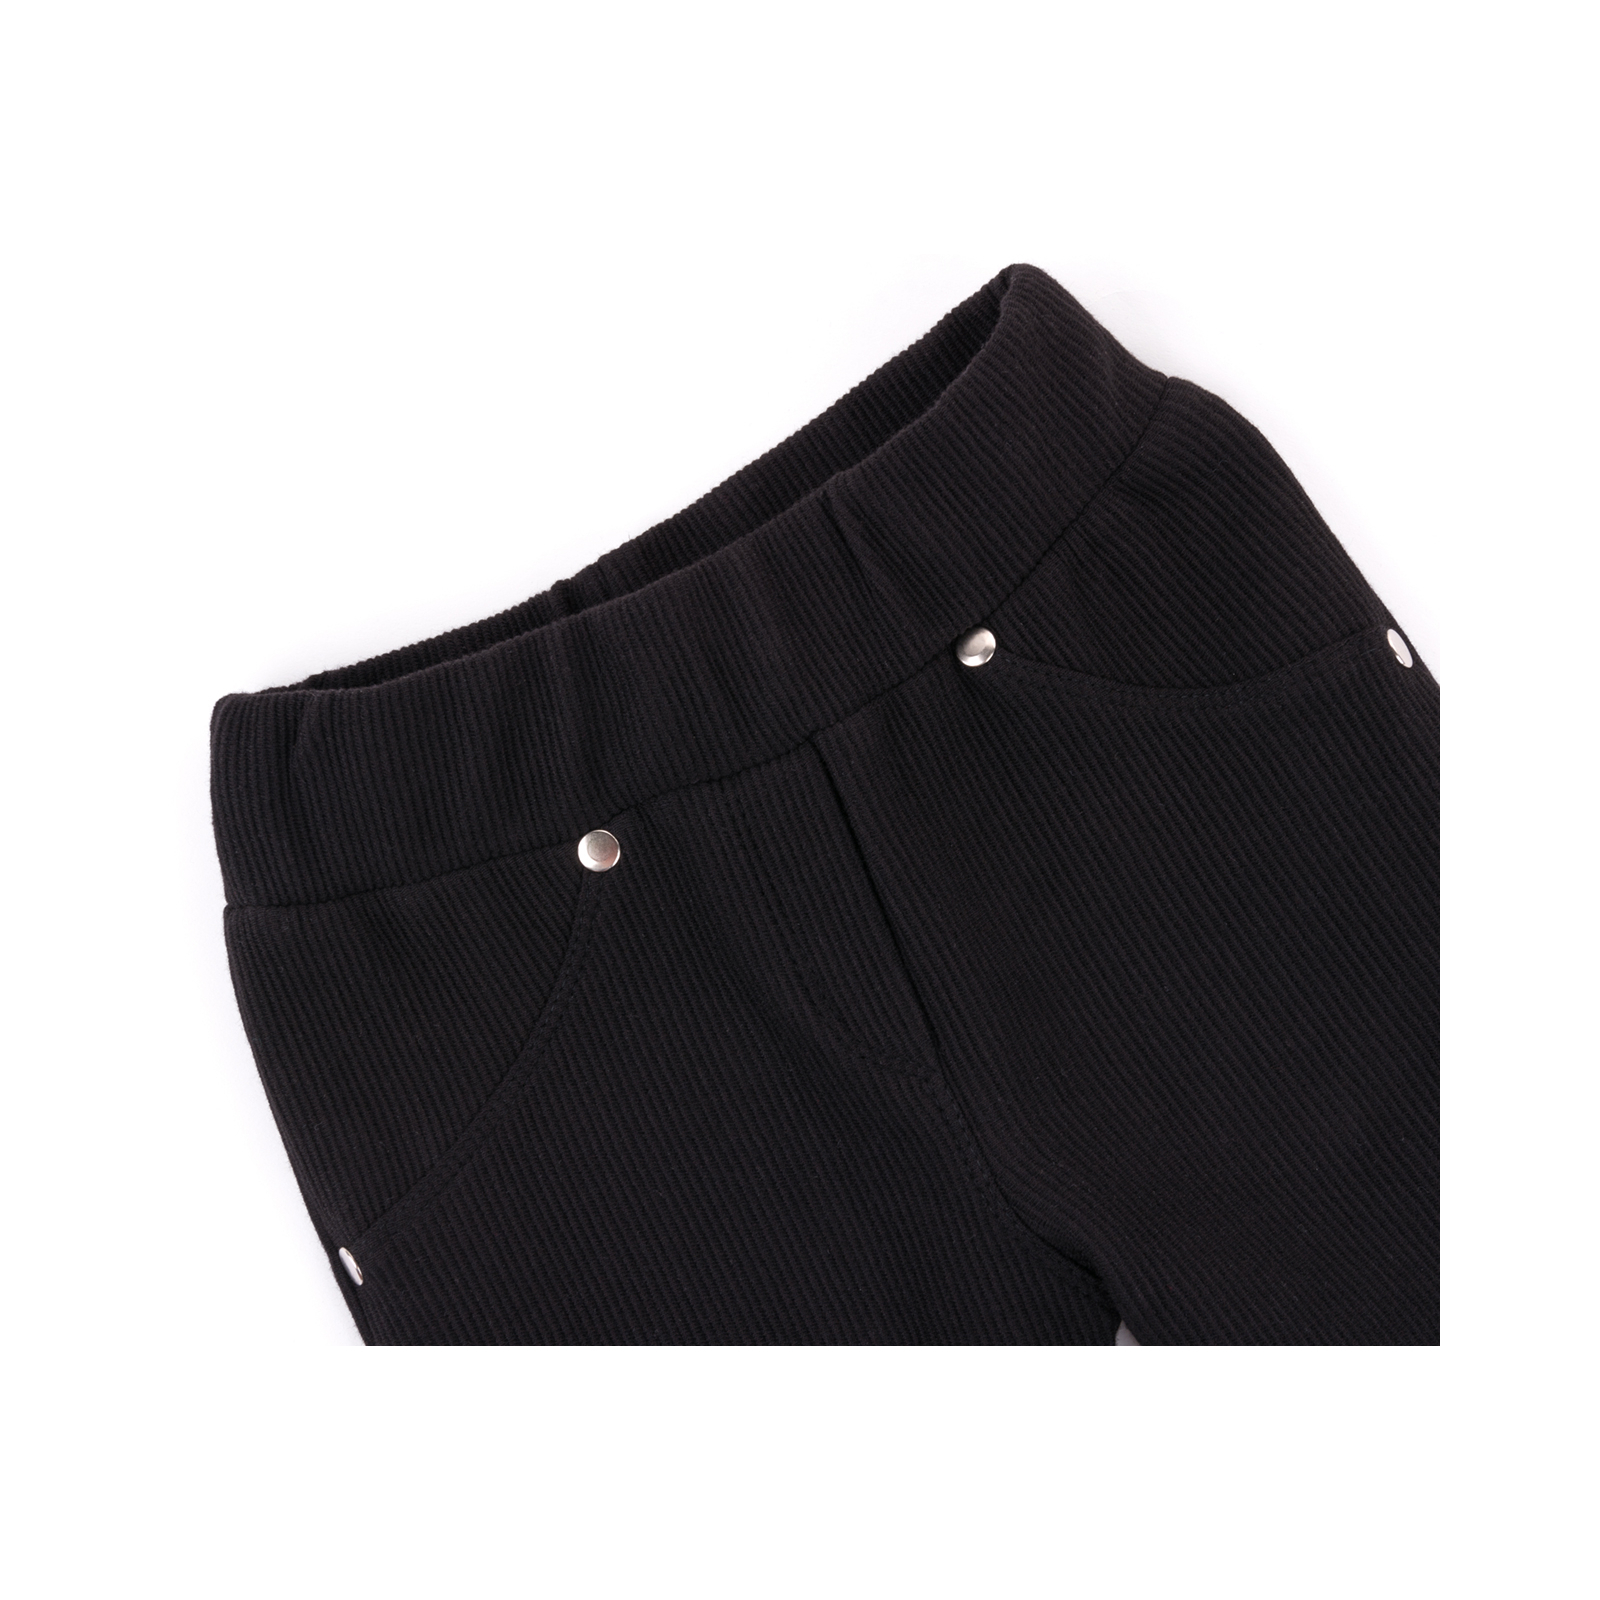 Лосины Breeze в рубчик с карманчиком (9842-140G-black) изображение 3